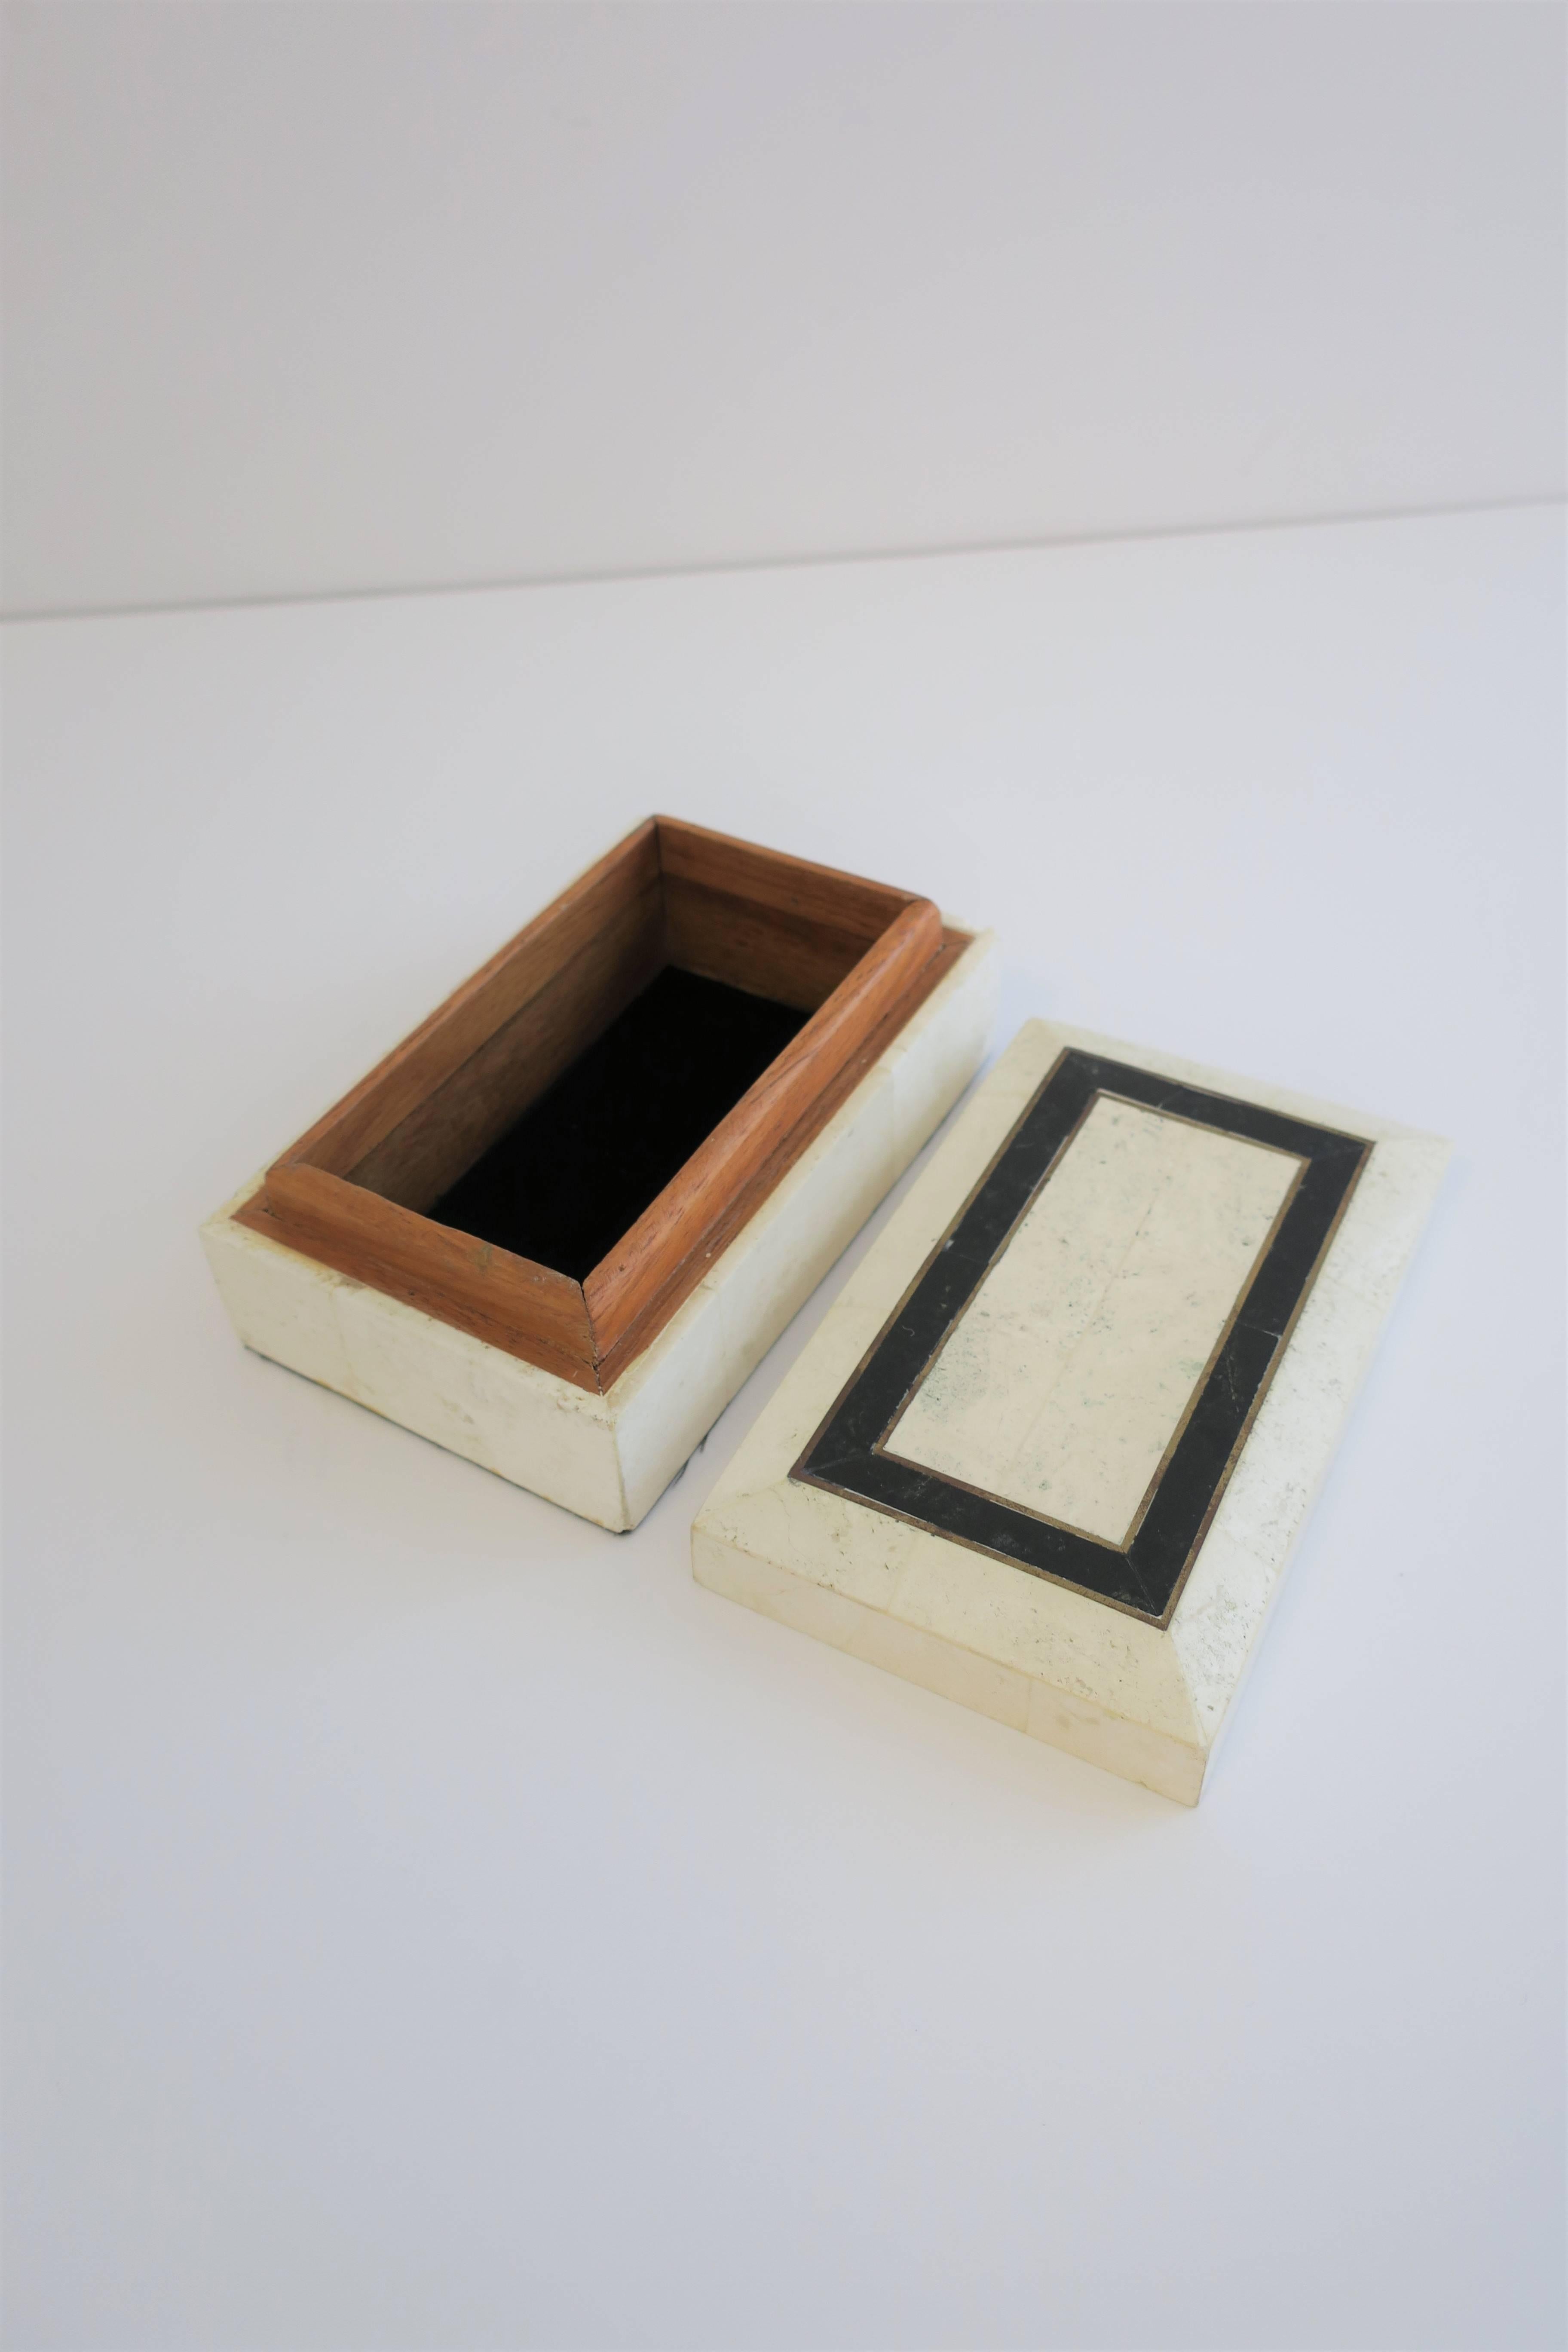 20th Century Black and White Travertine Marble Box